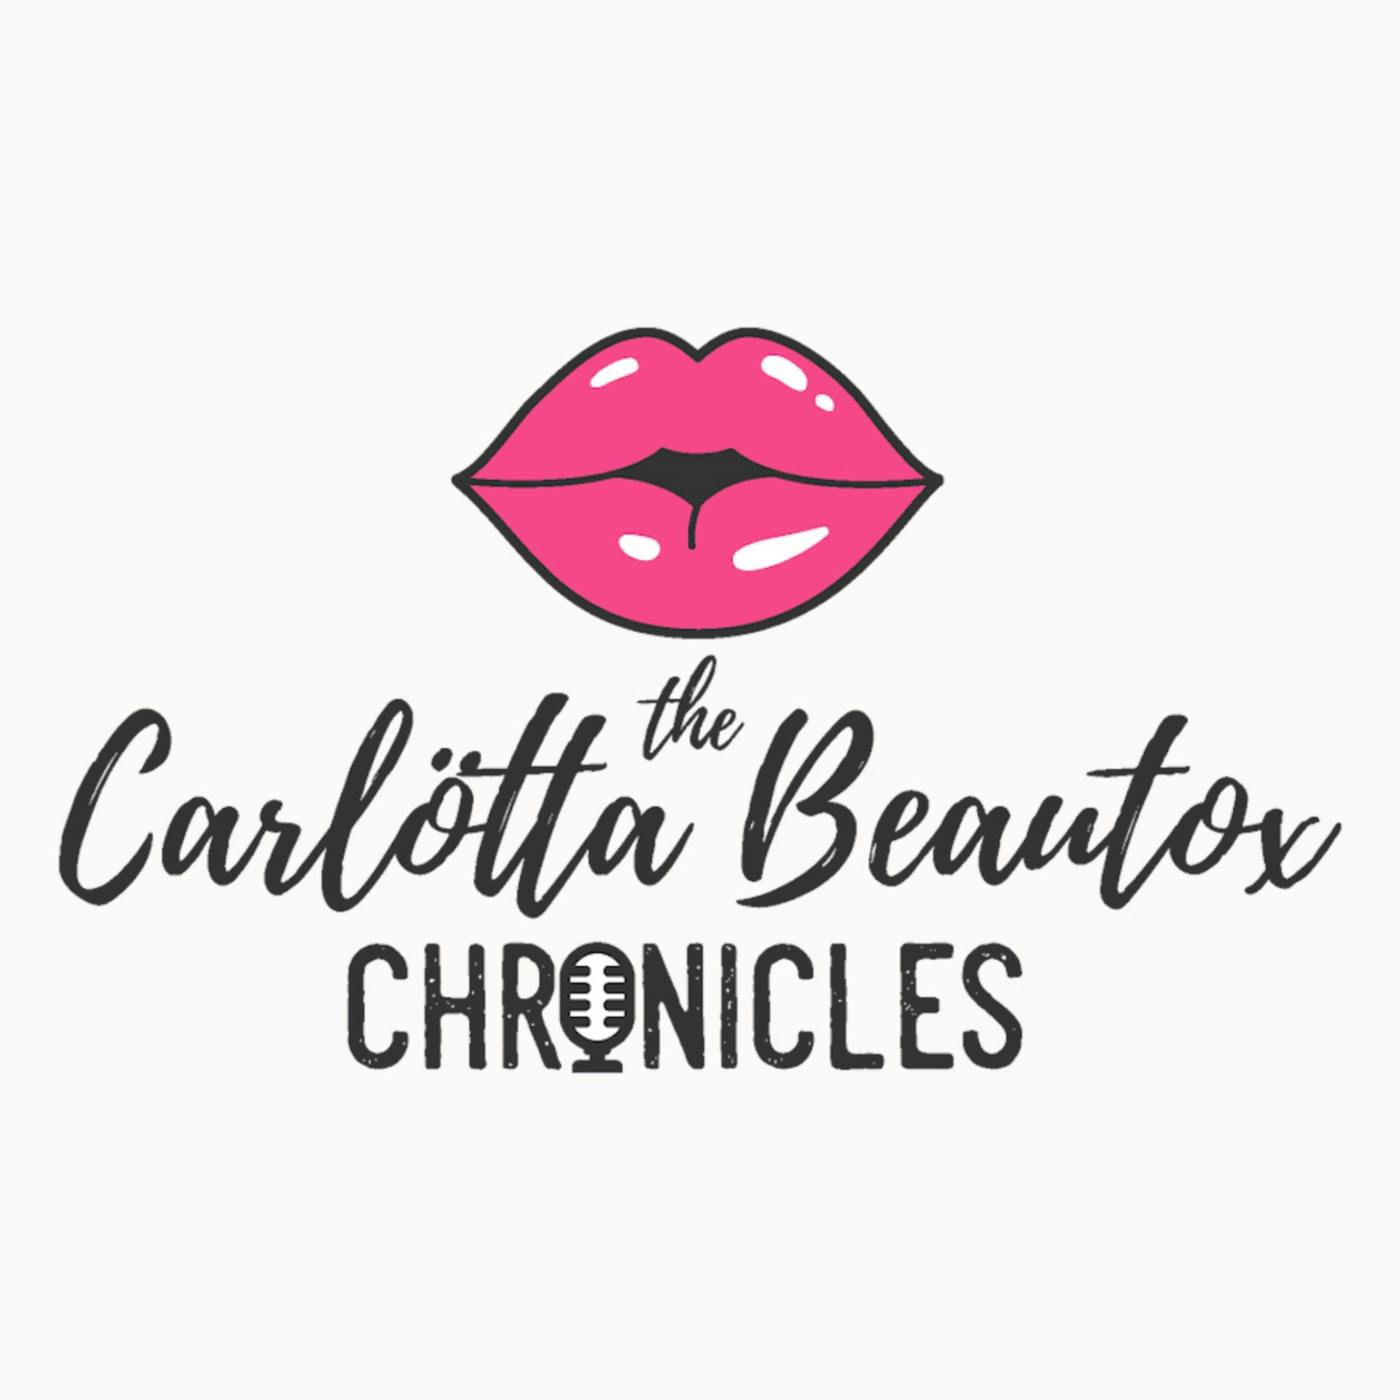 "The Carlötta Beautox Chronicles" Podcast